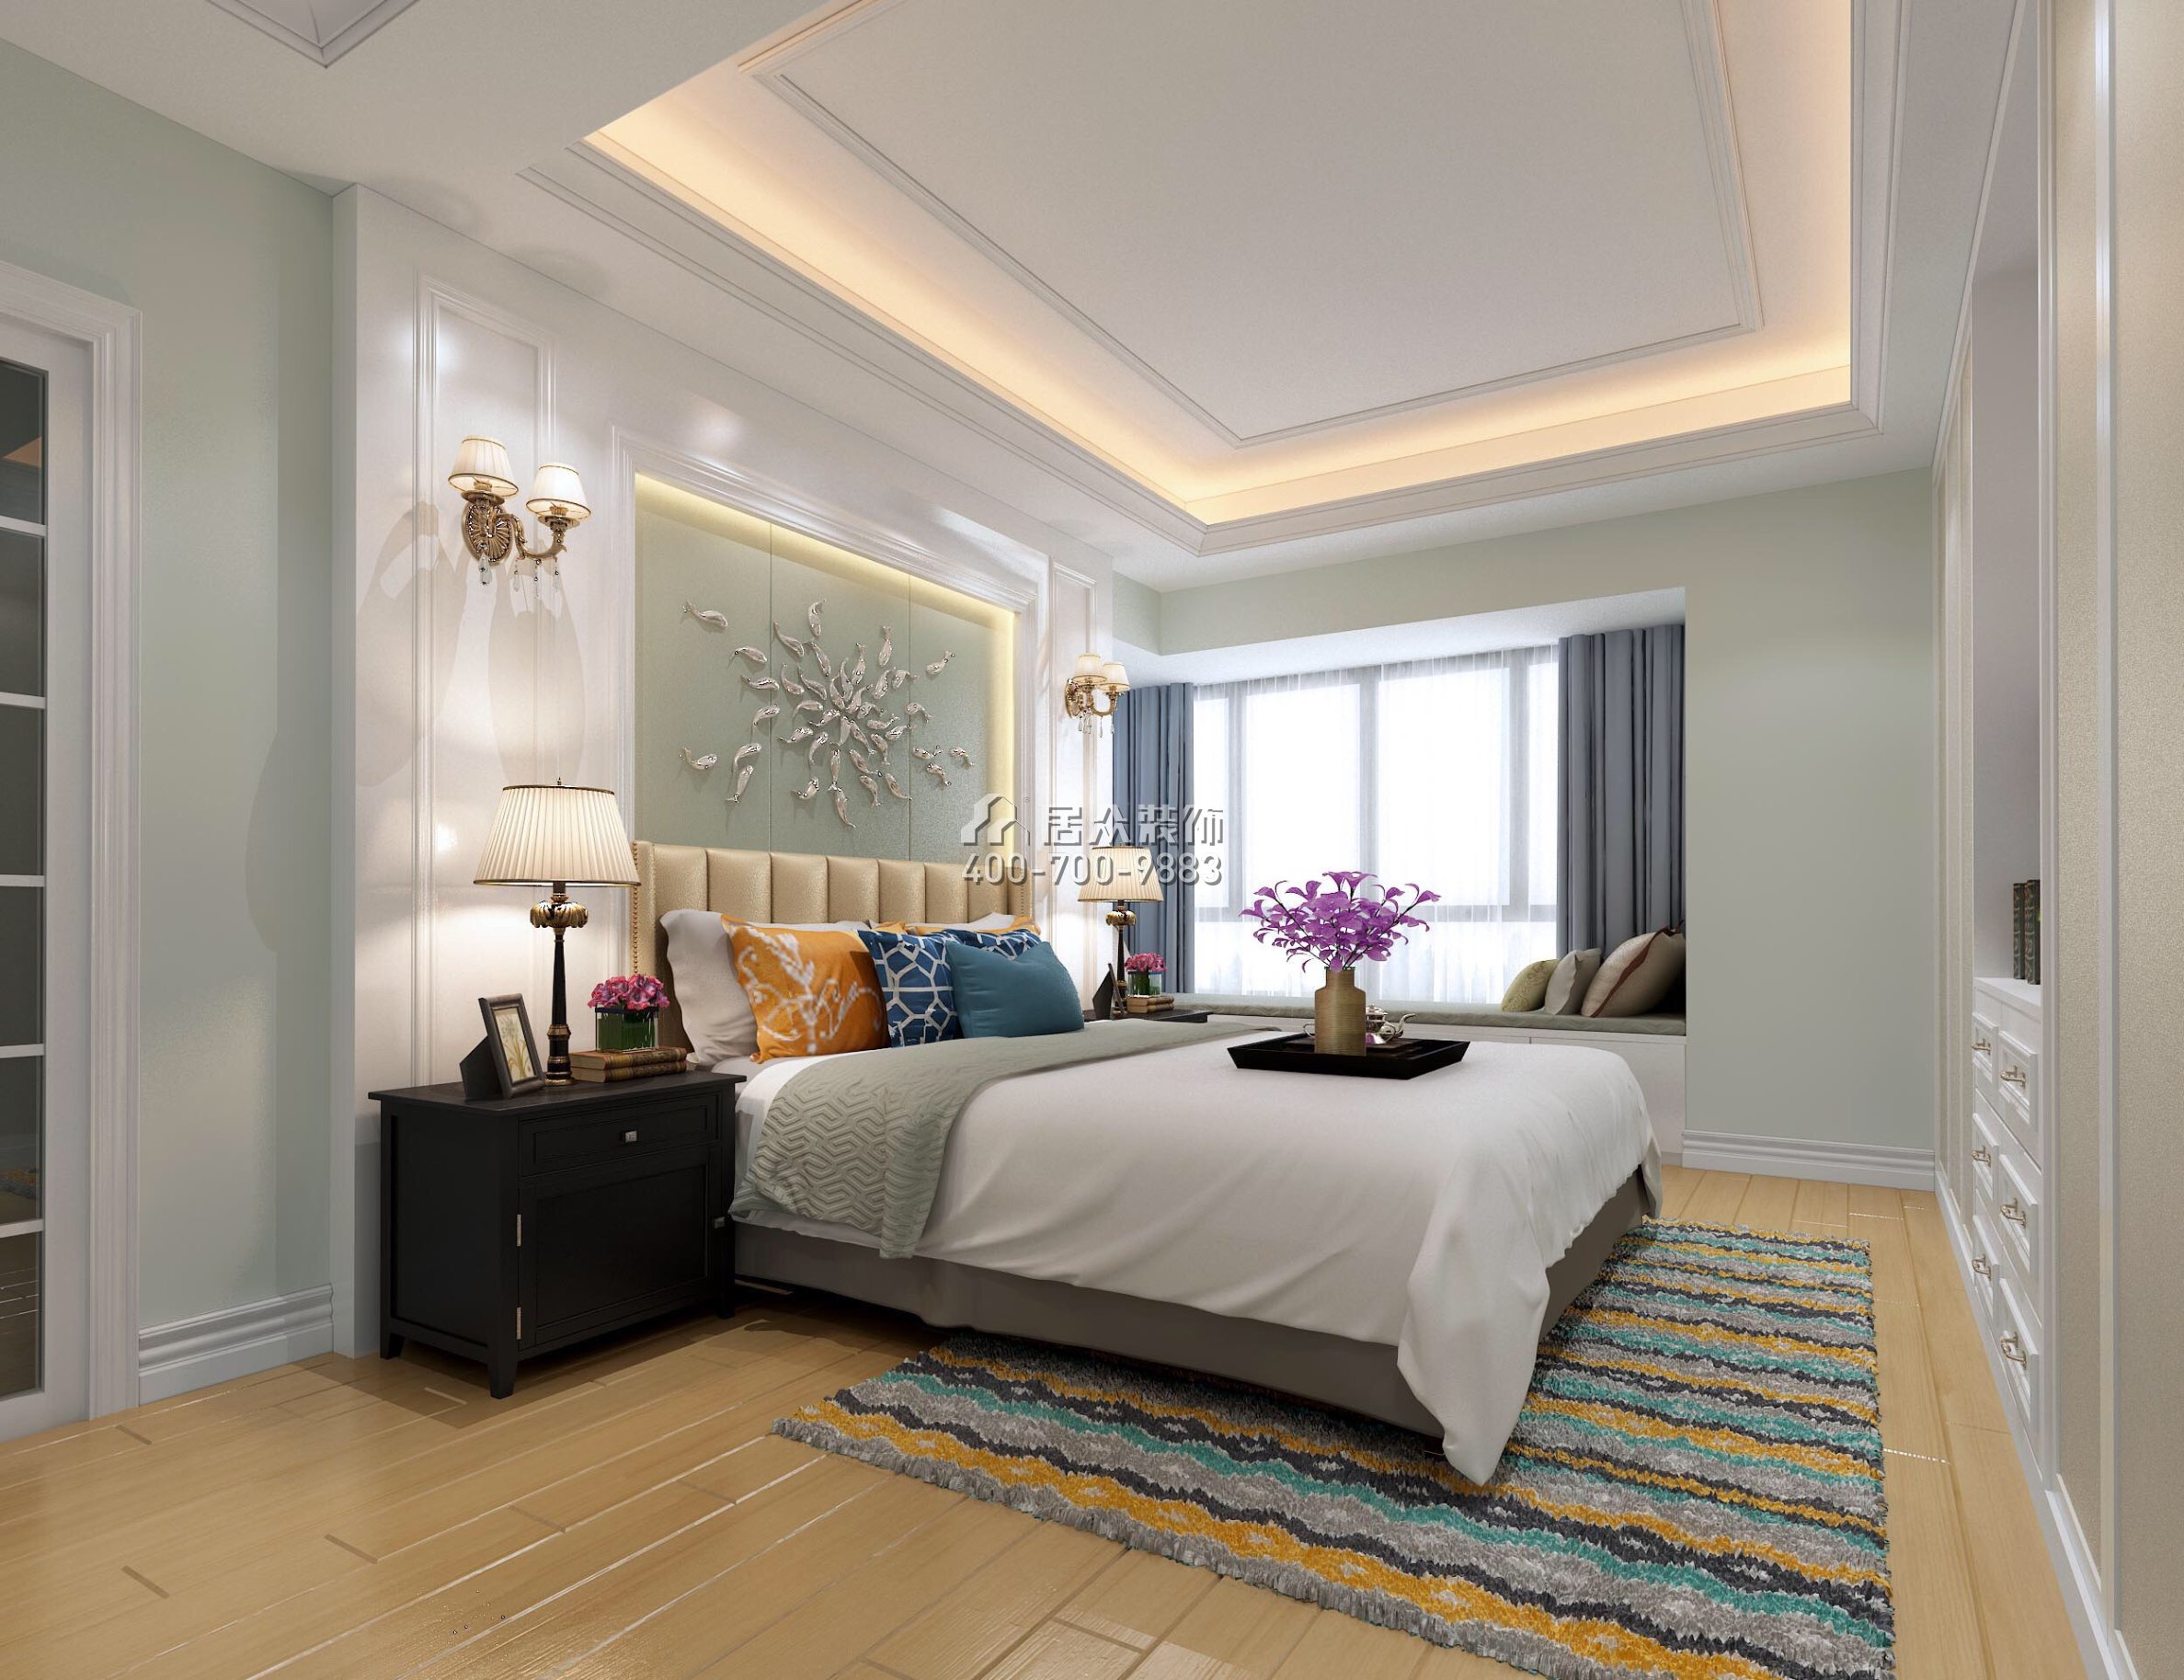 颐安都会中央花园一期140平方米田园风格平层户型卧室装修效果图